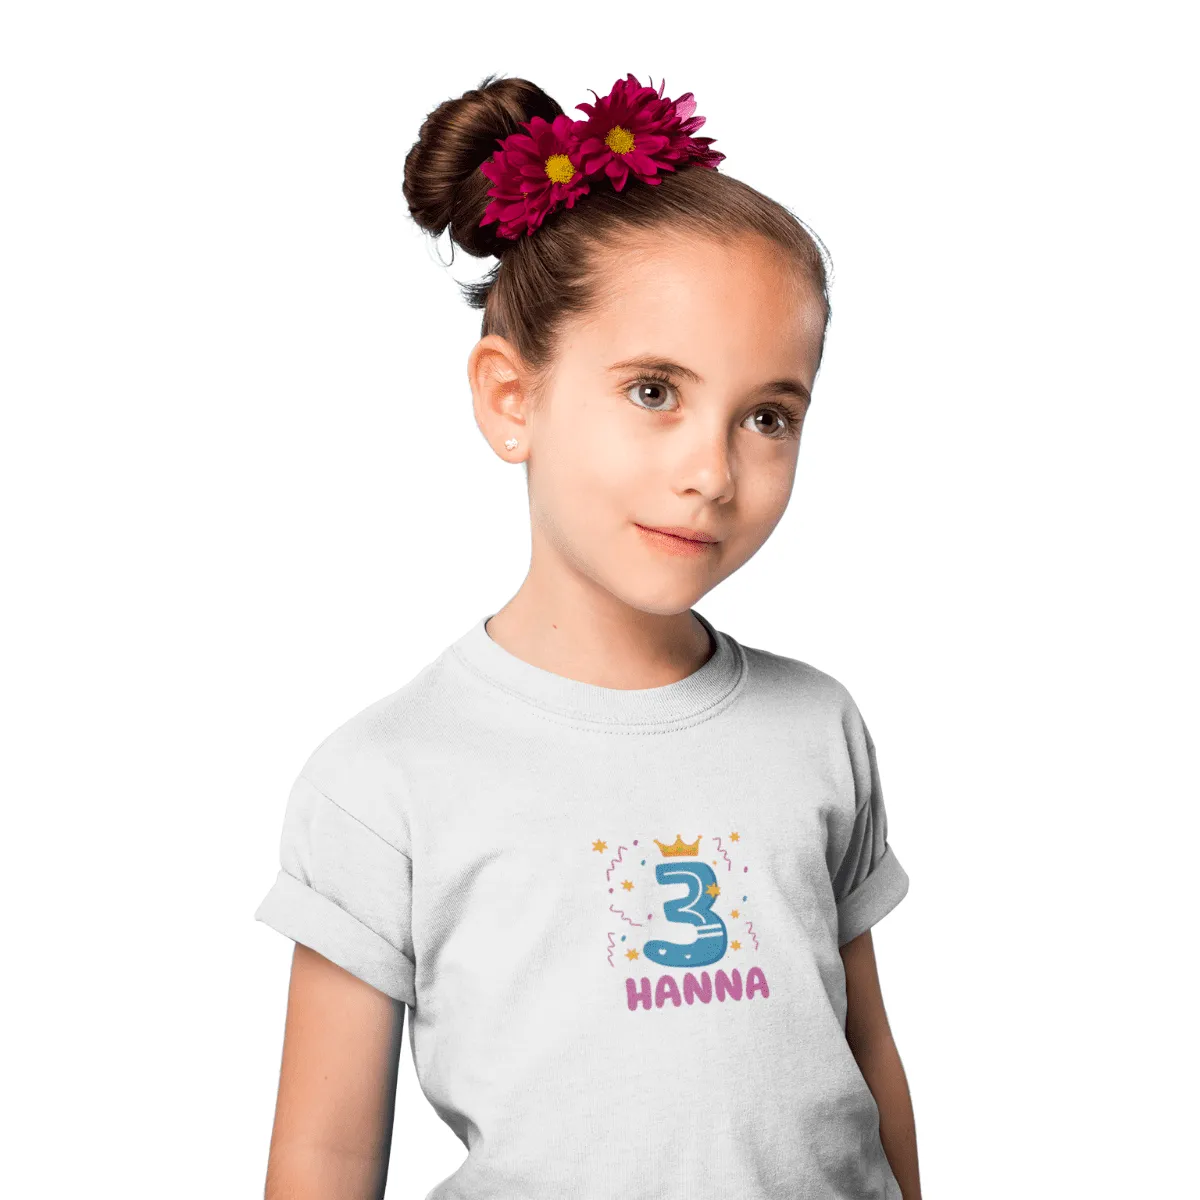 Kinder T-Shirt 3 Jahre mit Wunschname - Mädchen - Design Krone